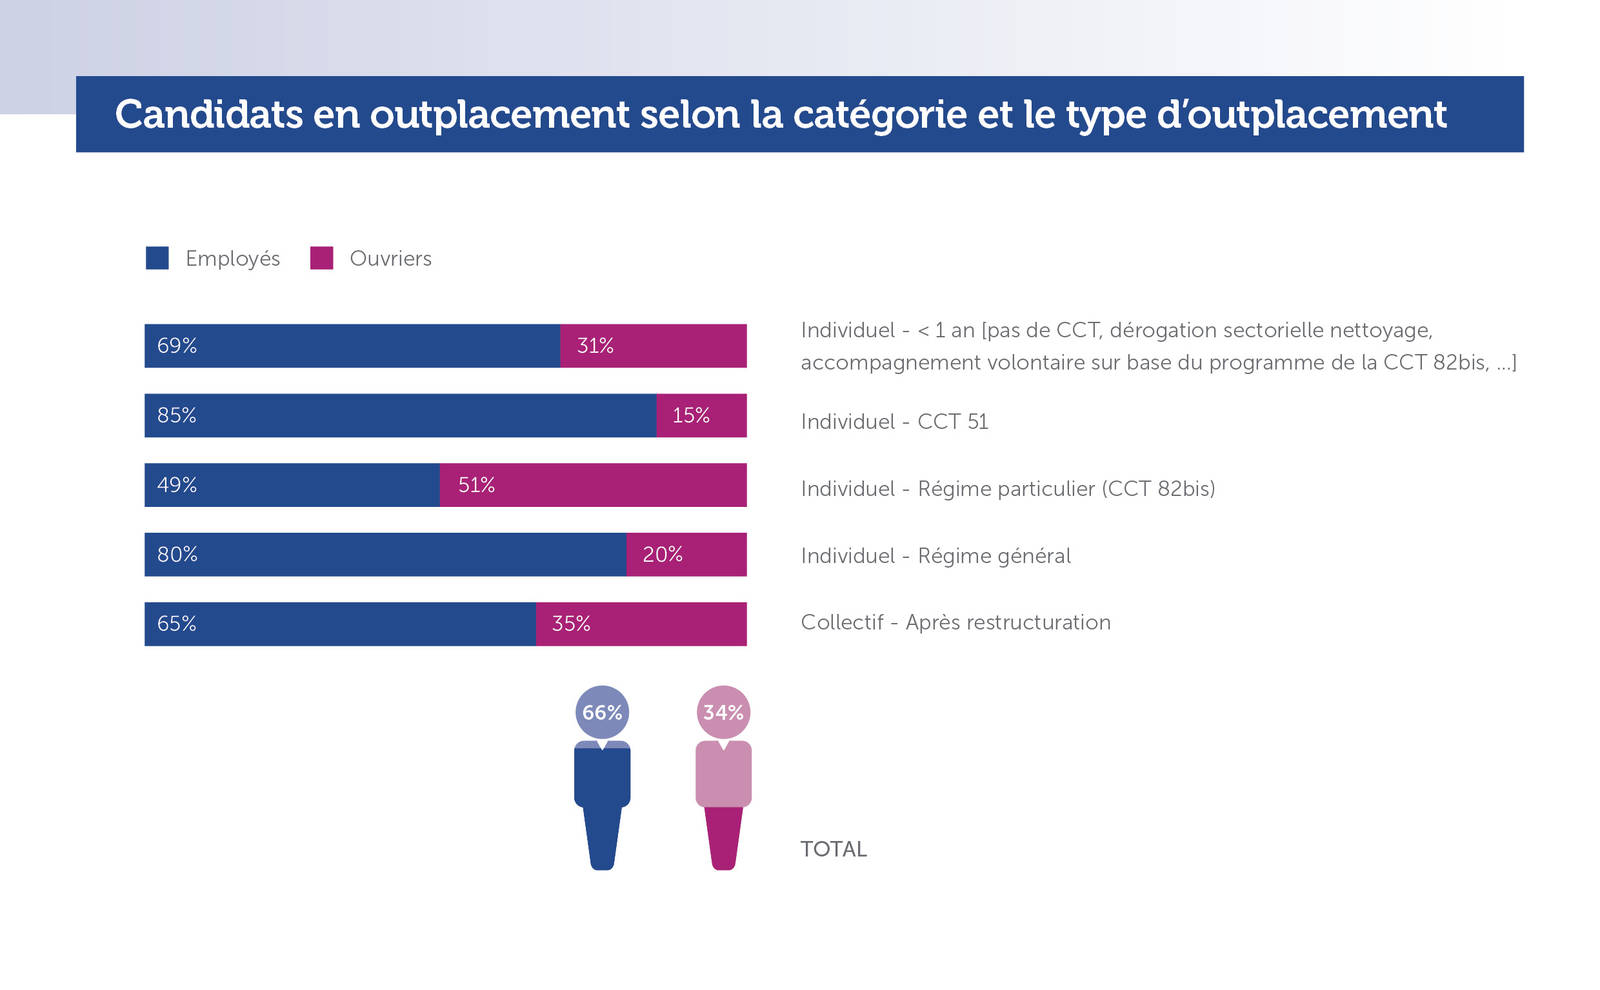 Kandidaten in outplacement volgens categorie en type outplacement (Jaarverslag 2017)